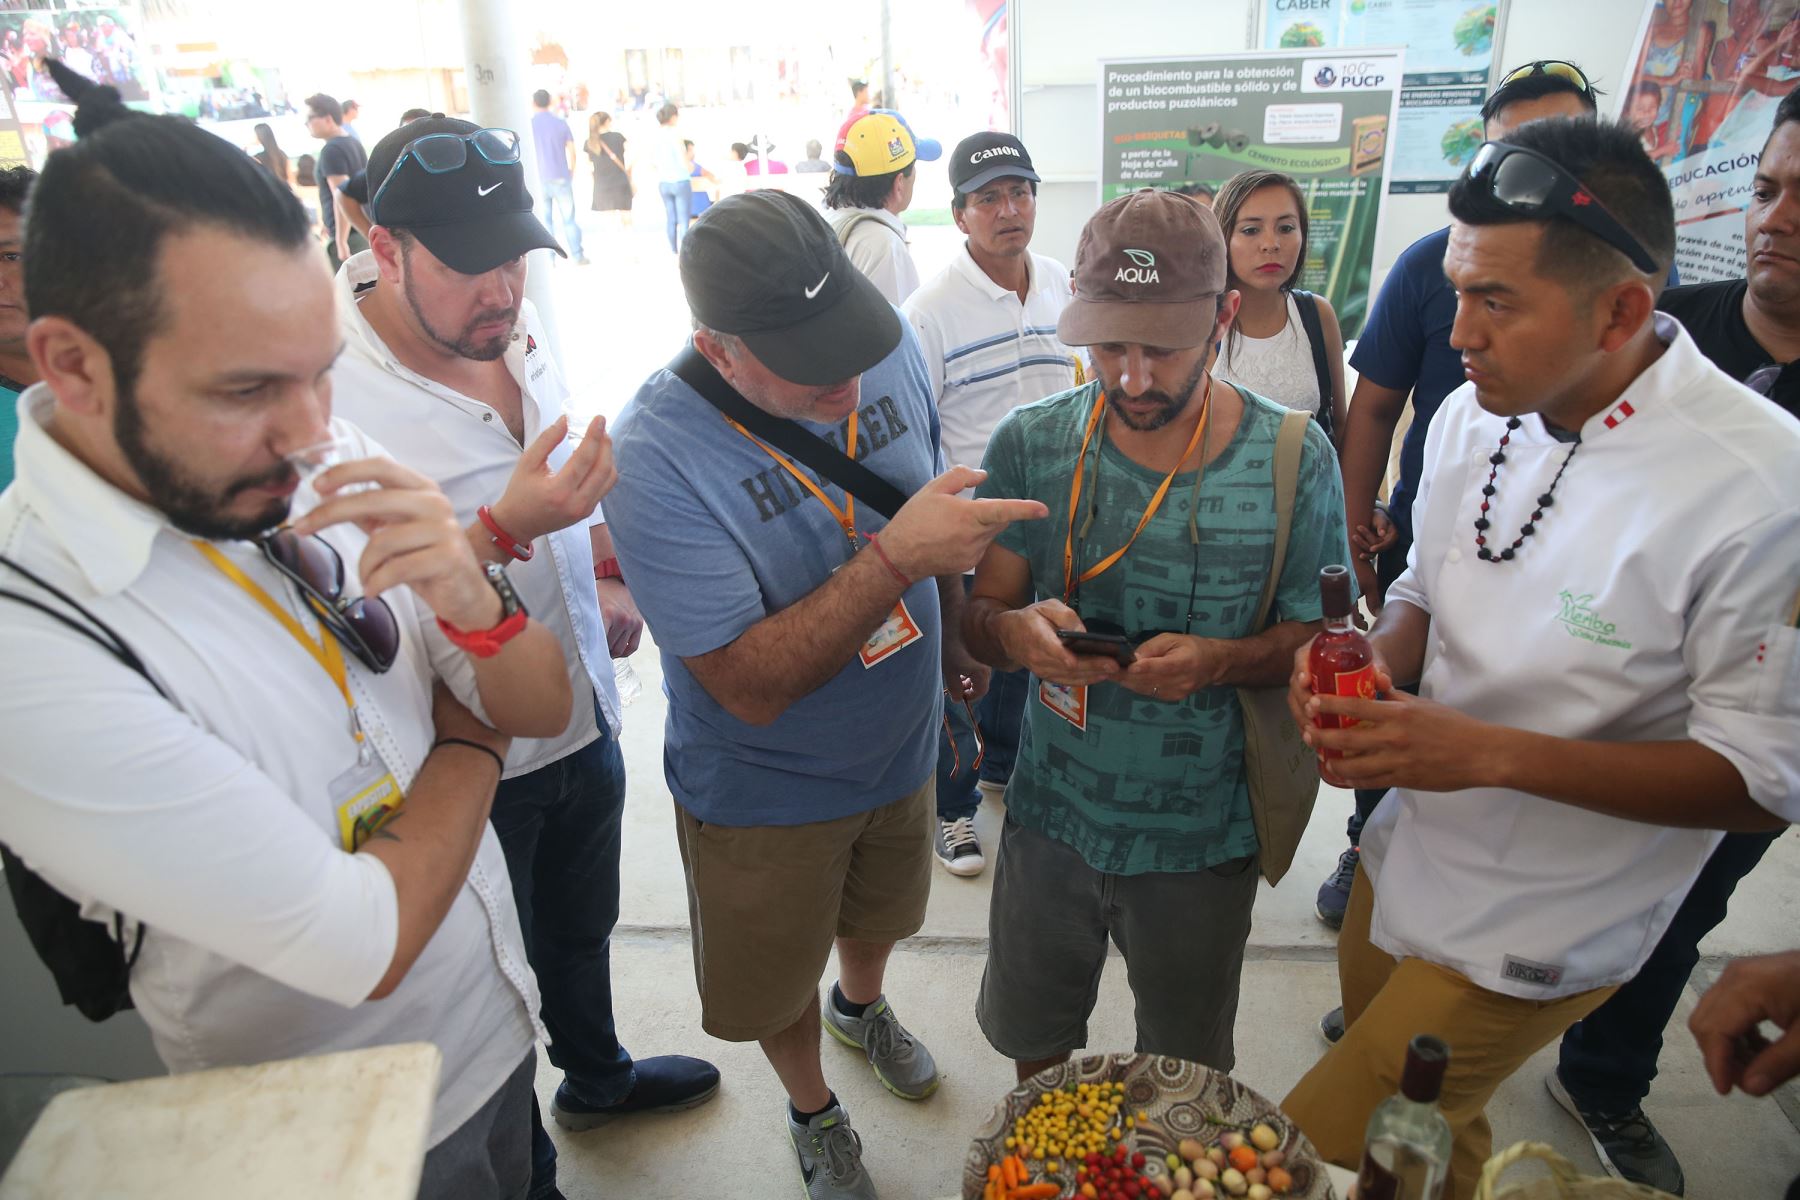 Un movimiento económico superior a los 71 millones de soles generó la Expo Amazónica 2017, realizada en agosto y de manera simultánea en las ciudades de Moyobamba y Tarapoto, informó el gobernador regional de San Martín, Víctor Noriega Reátegui. ANDINA/Vidal Tarqui